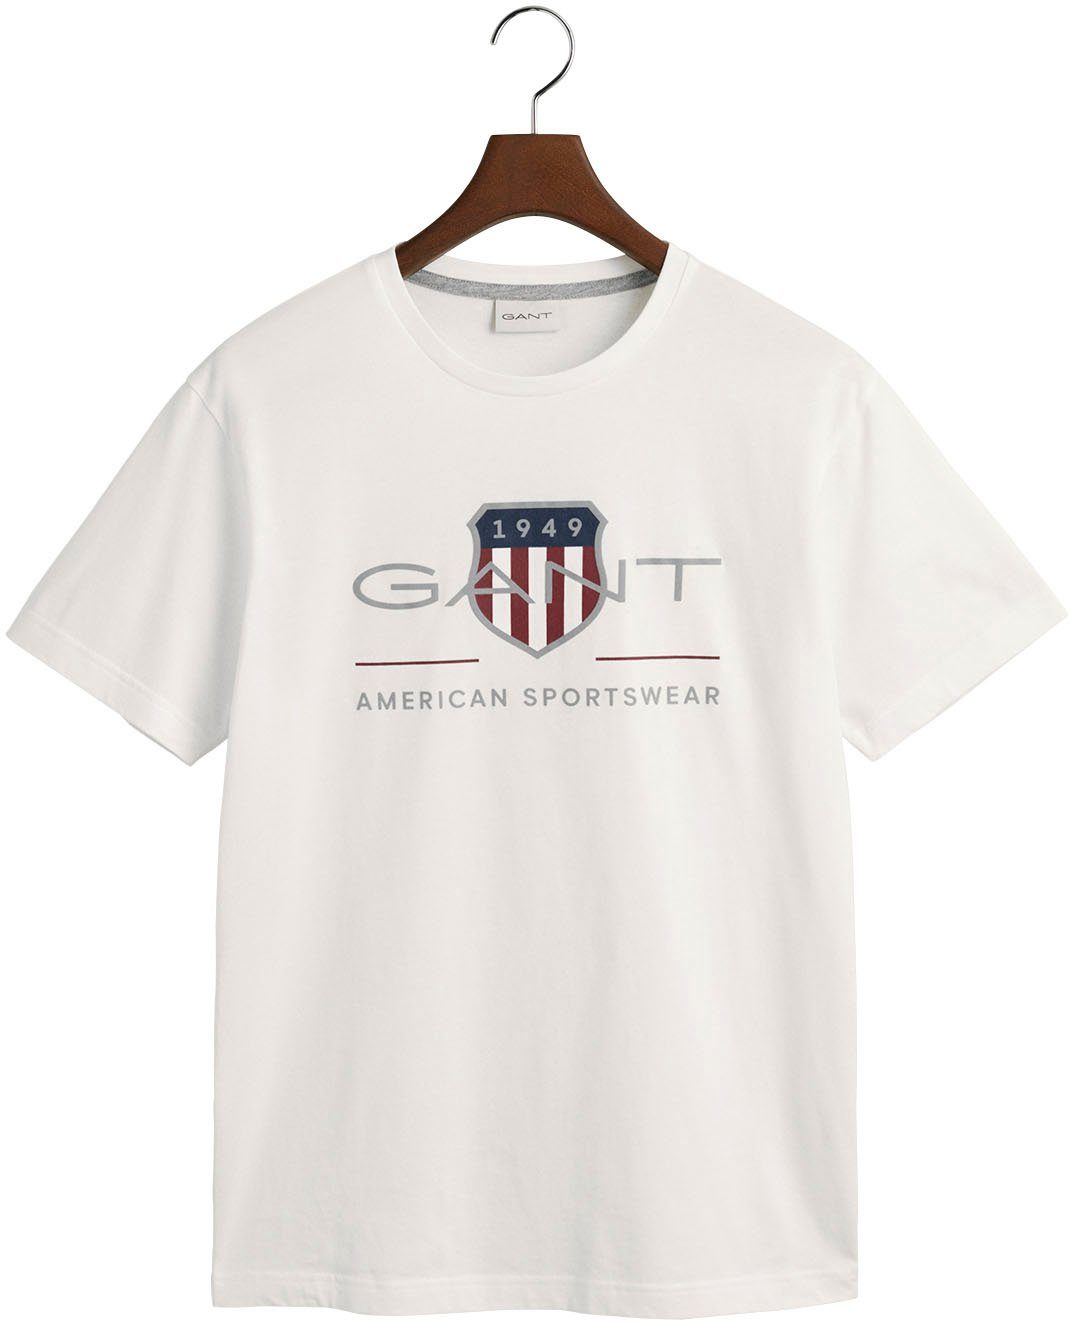 Gant T-Shirt T-SHIRT Brust REG der ARCHIVE Logodruck white SHIELD mit SS auf